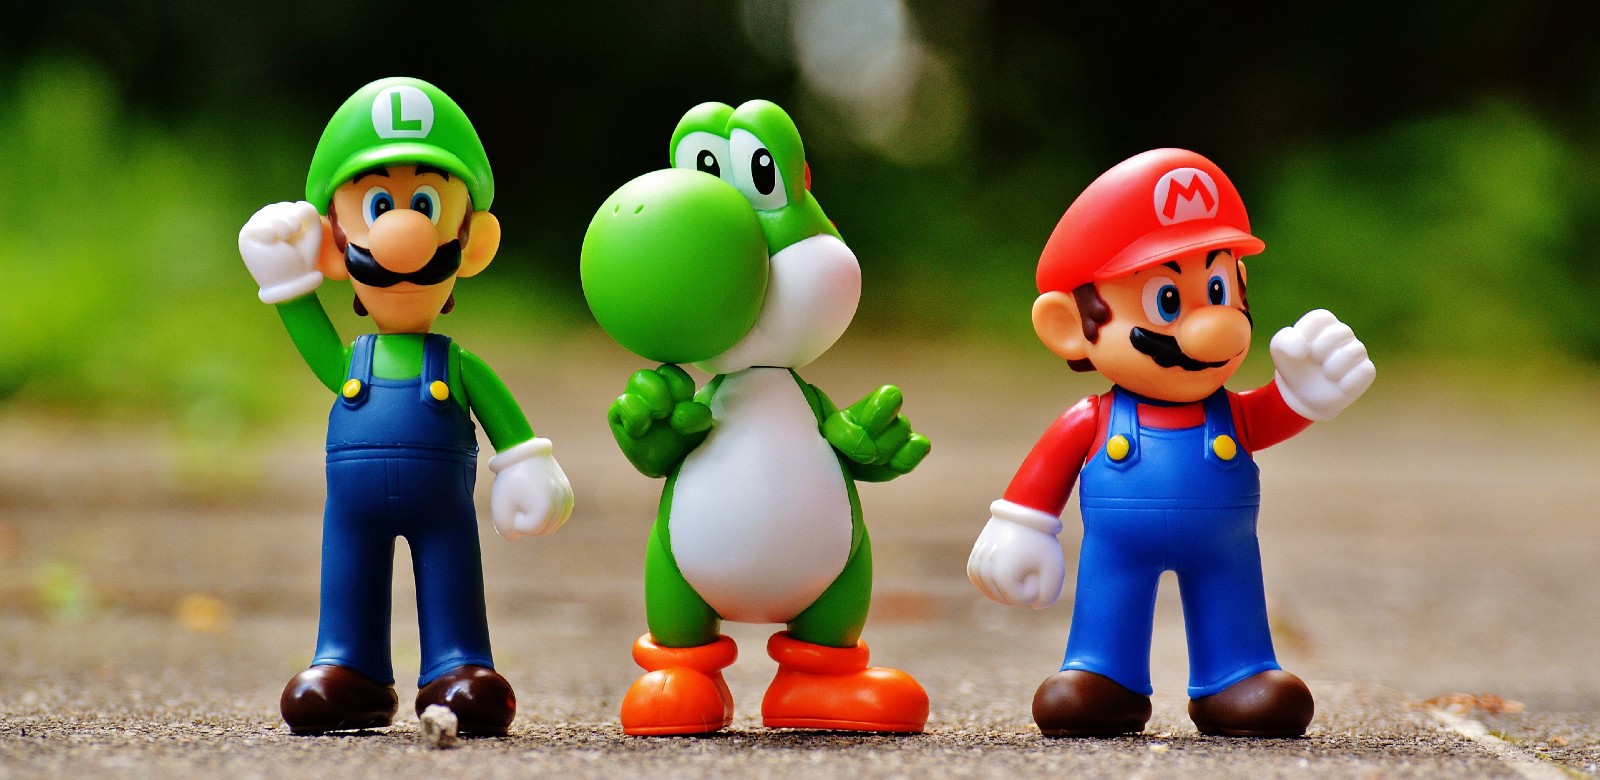 9 sự thật về tựa game Mario hái nấm huyền thoại sẽ khiến bạn phải giật mình - Ảnh 8.